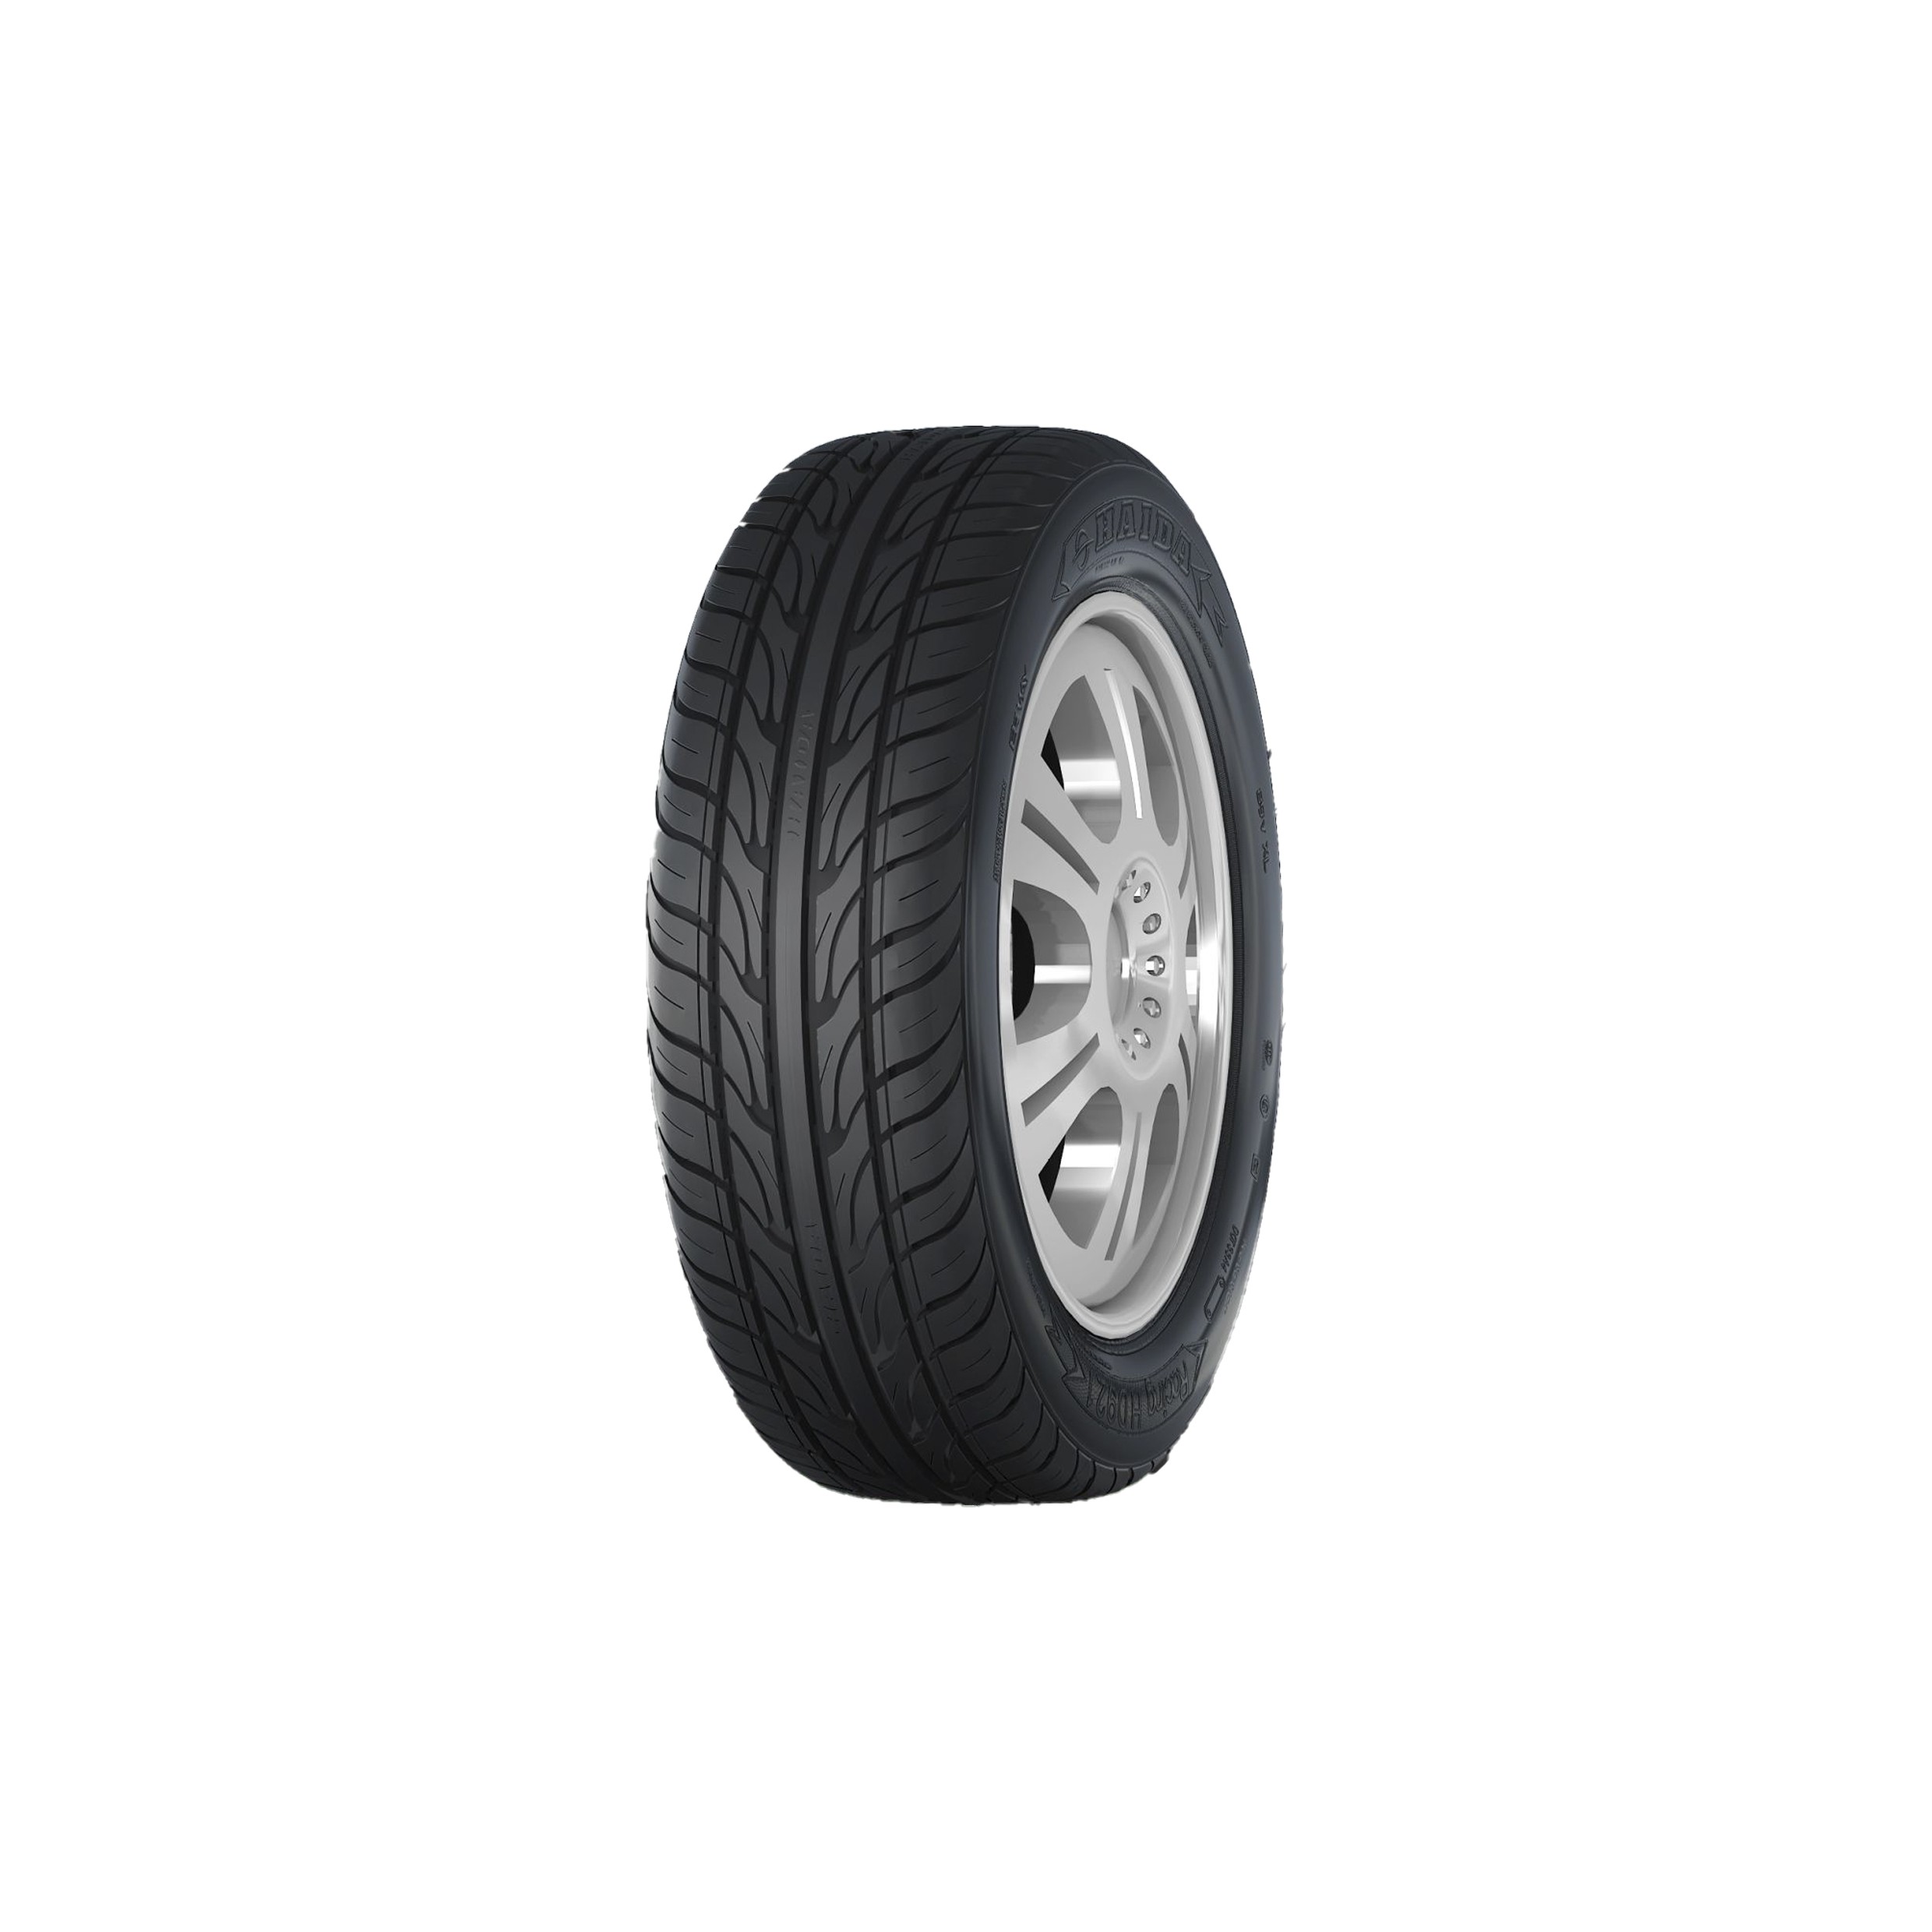 汽車輪胎 省油堅固 抓地力強 耐用 高里程 多種尺寸適用